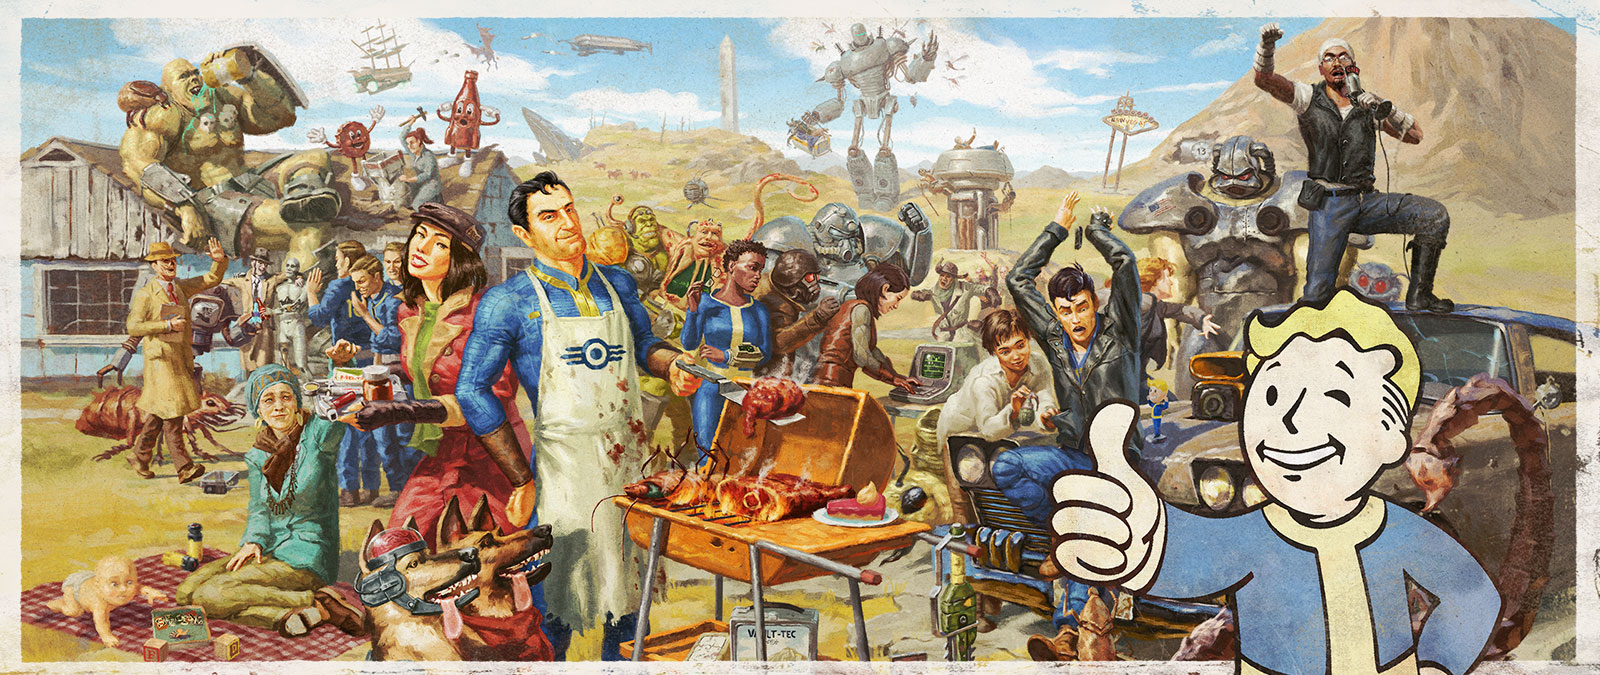 Postacie ze świata gry Fallout zbierają się na wspólnym rodzinnym grillu.